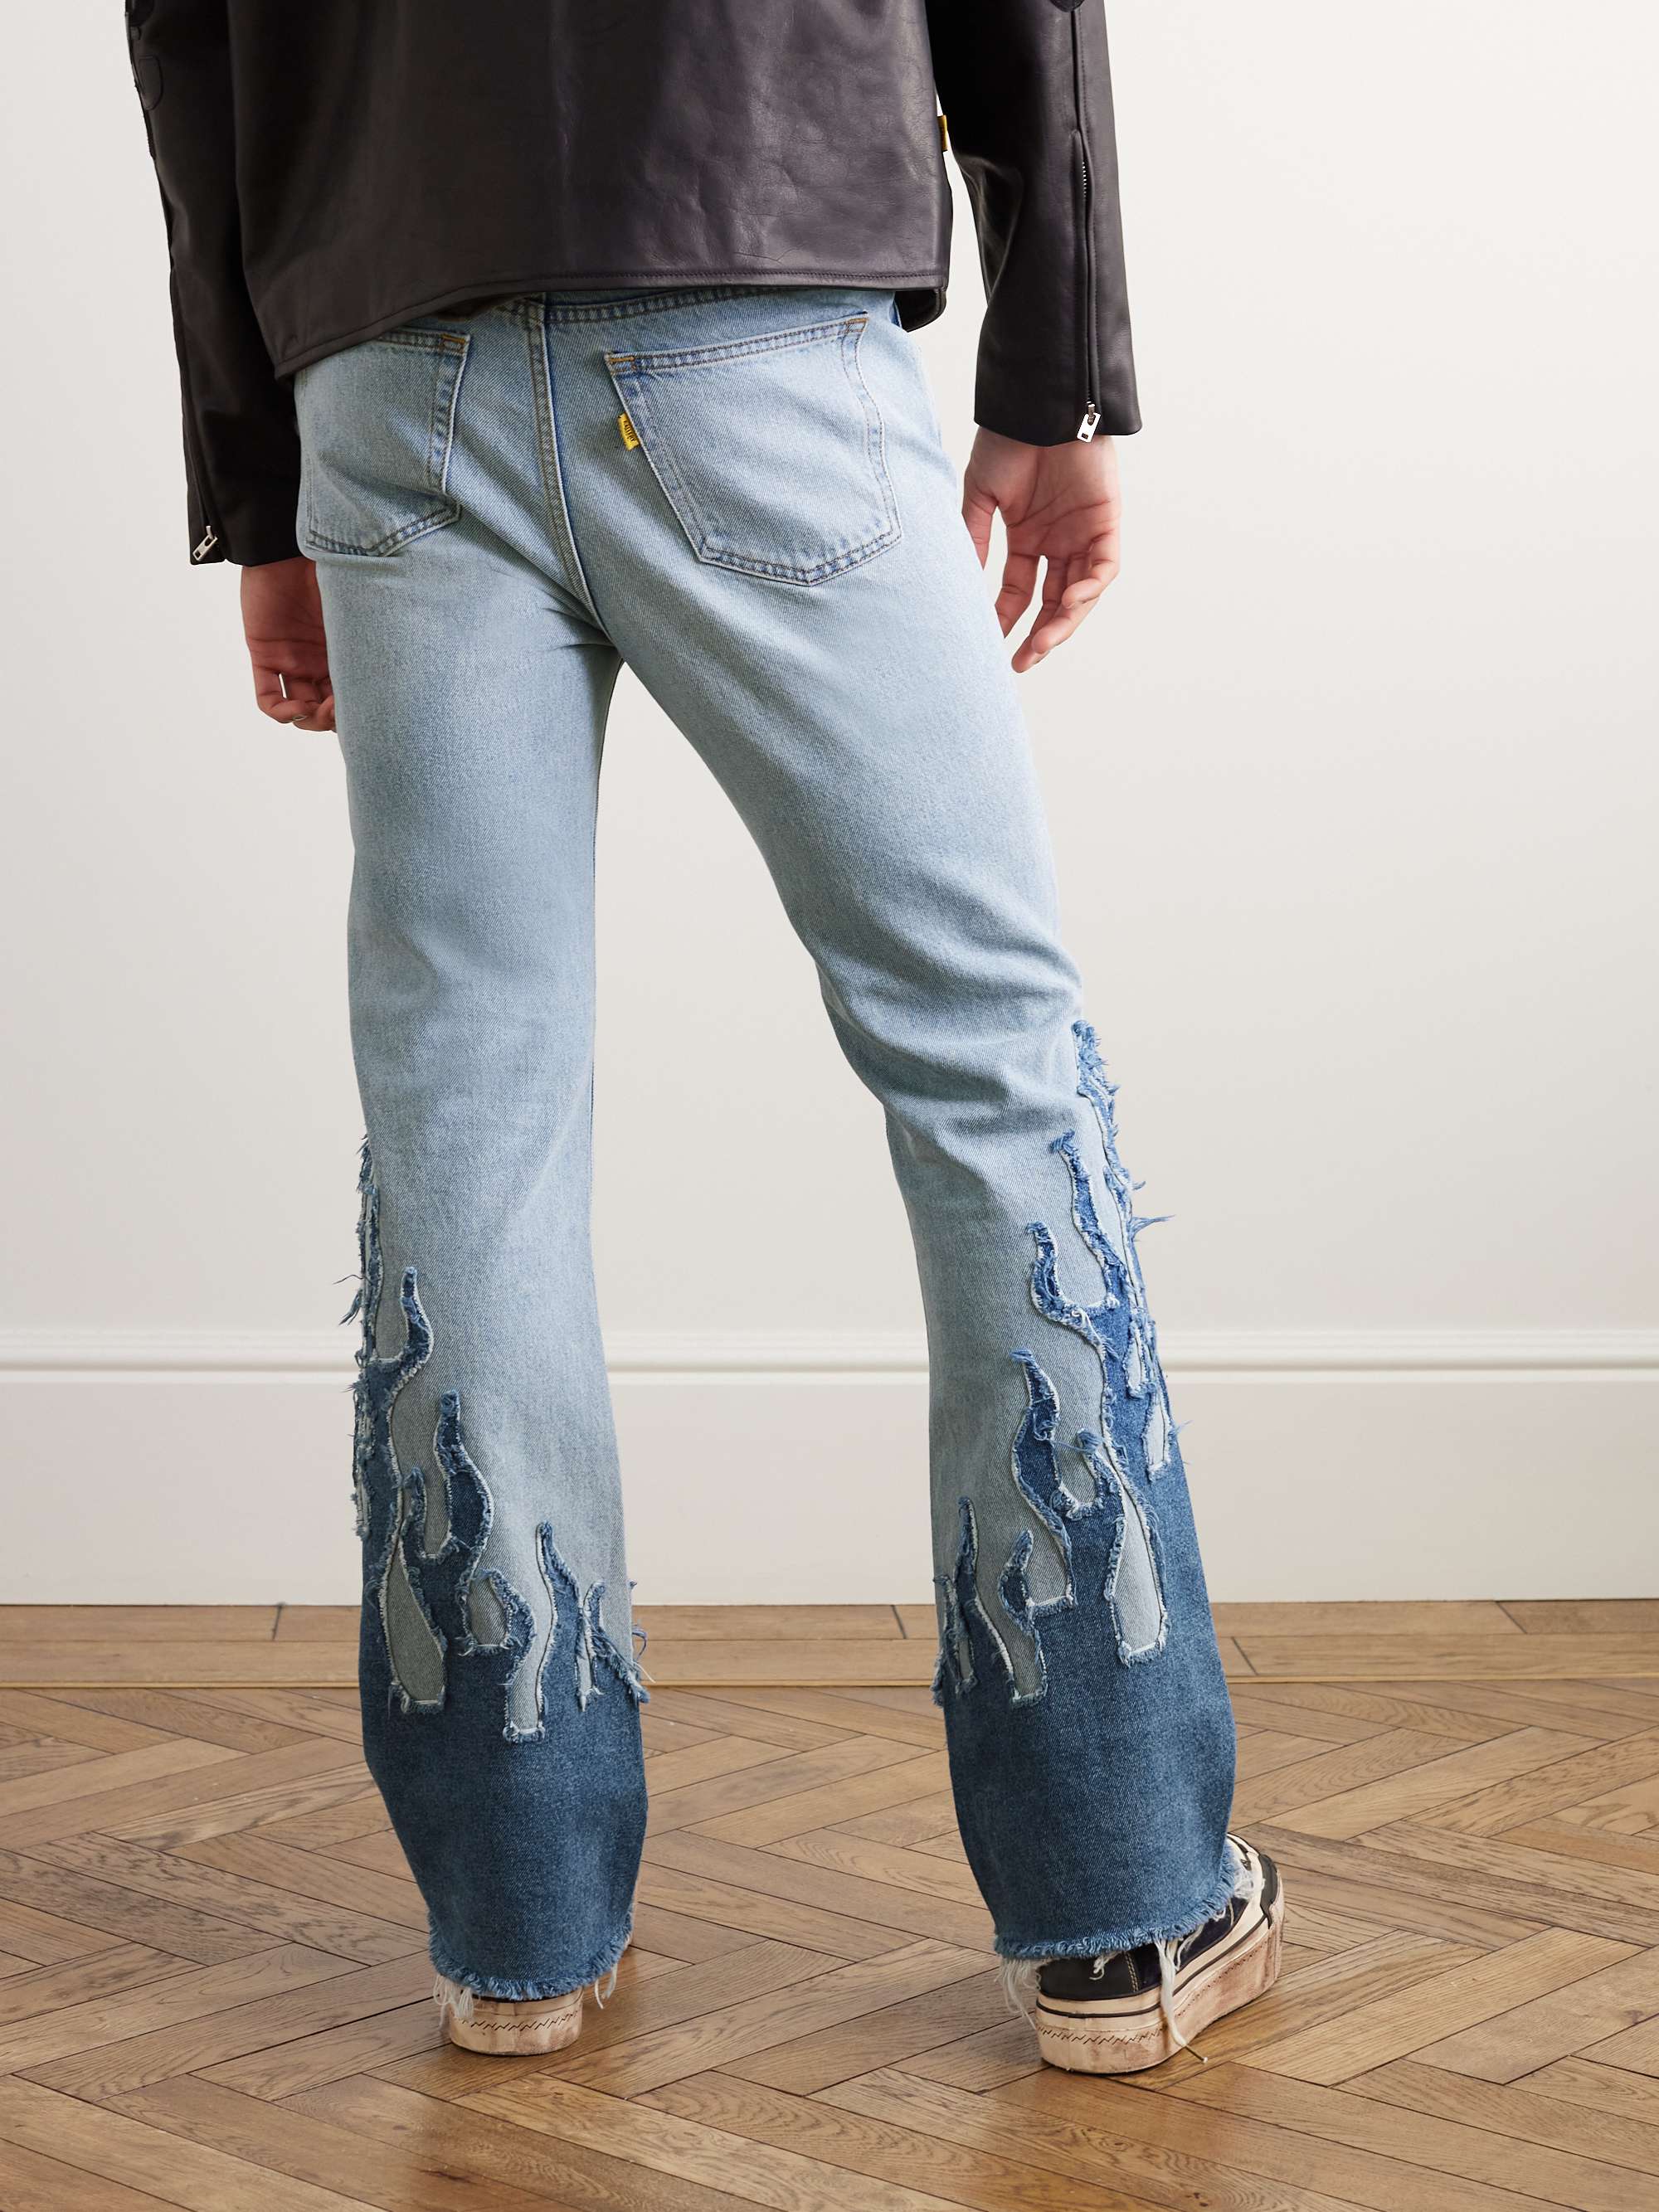 GALLERY DEPT. LA Blvd Flared Appliquéd Distressed Jeans